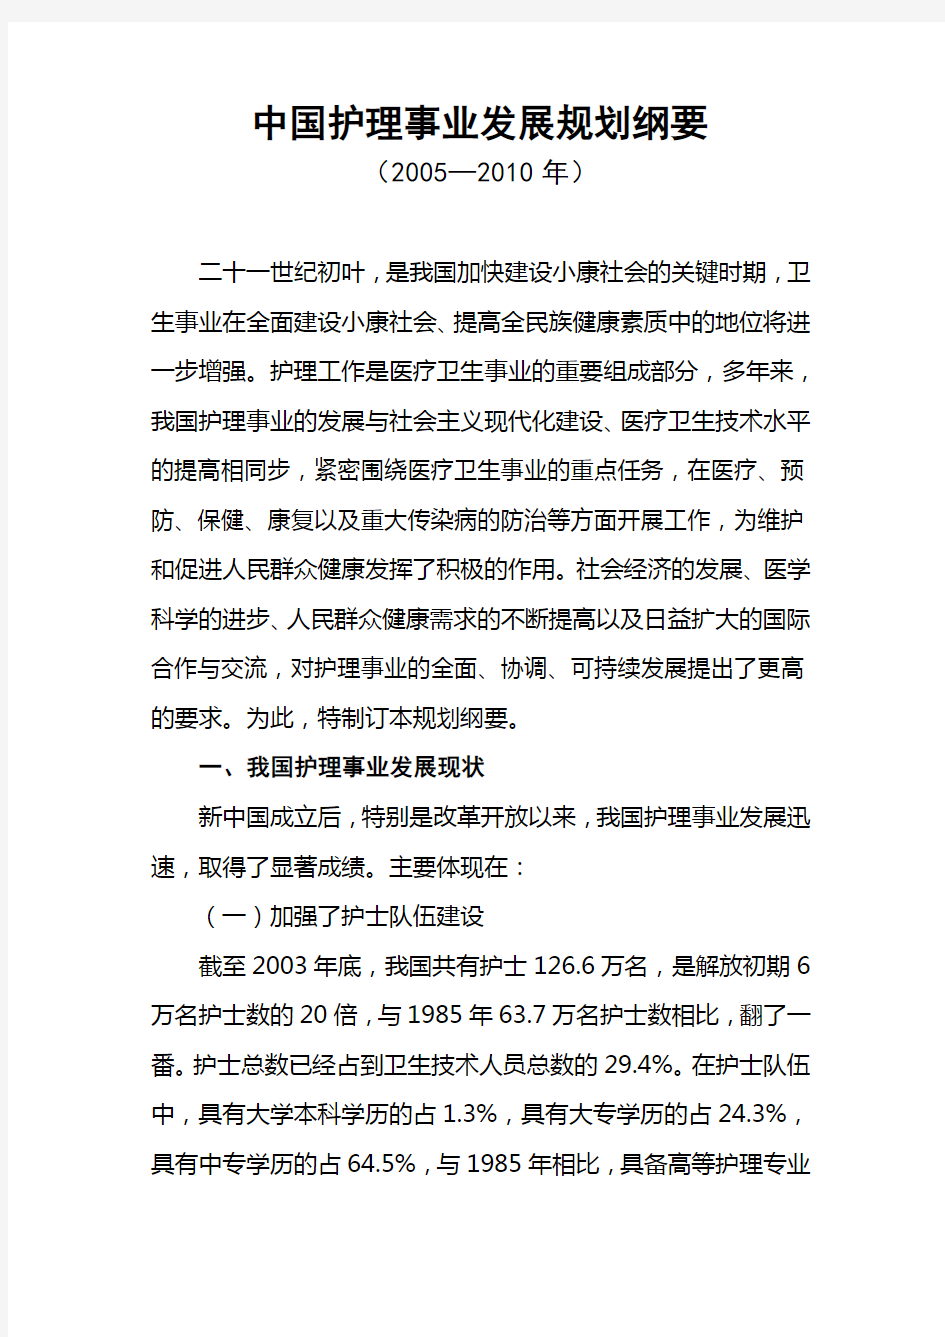 中国护理事业发展规划纲要(2005—2010年)